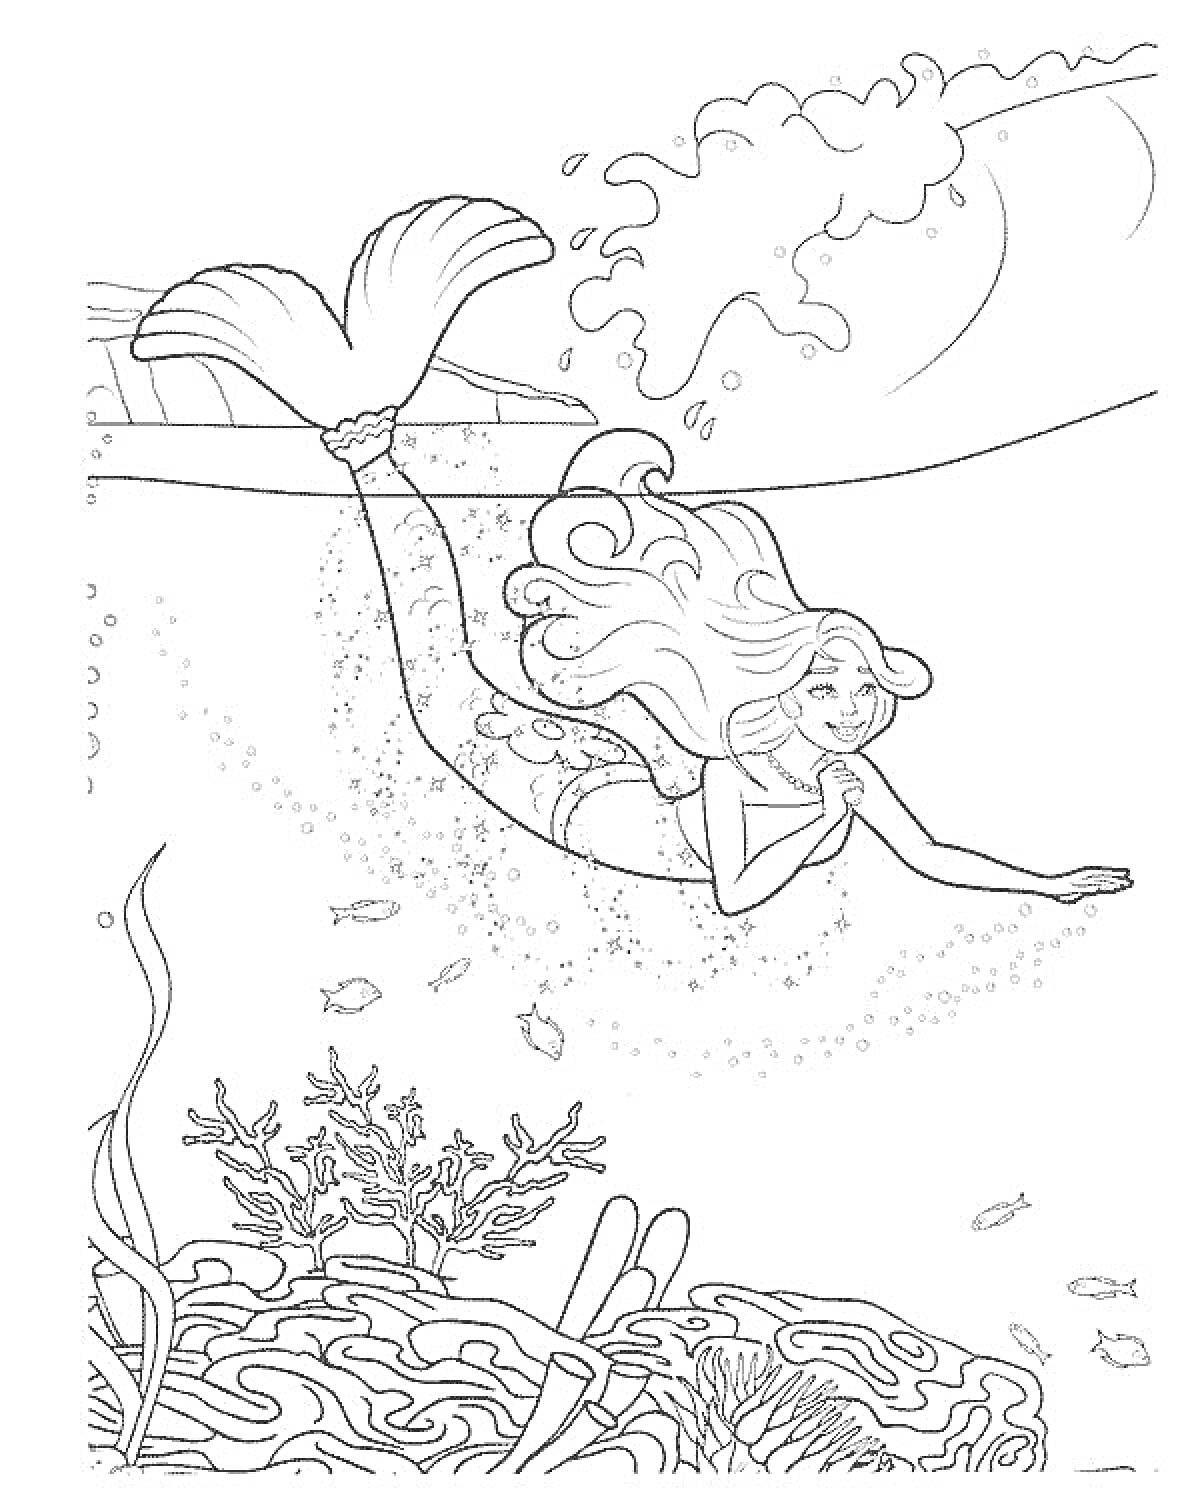 Барби Русалочка плывёт под водой среди рыбок и кораллов, вдалеке видны волны и солнечный свет